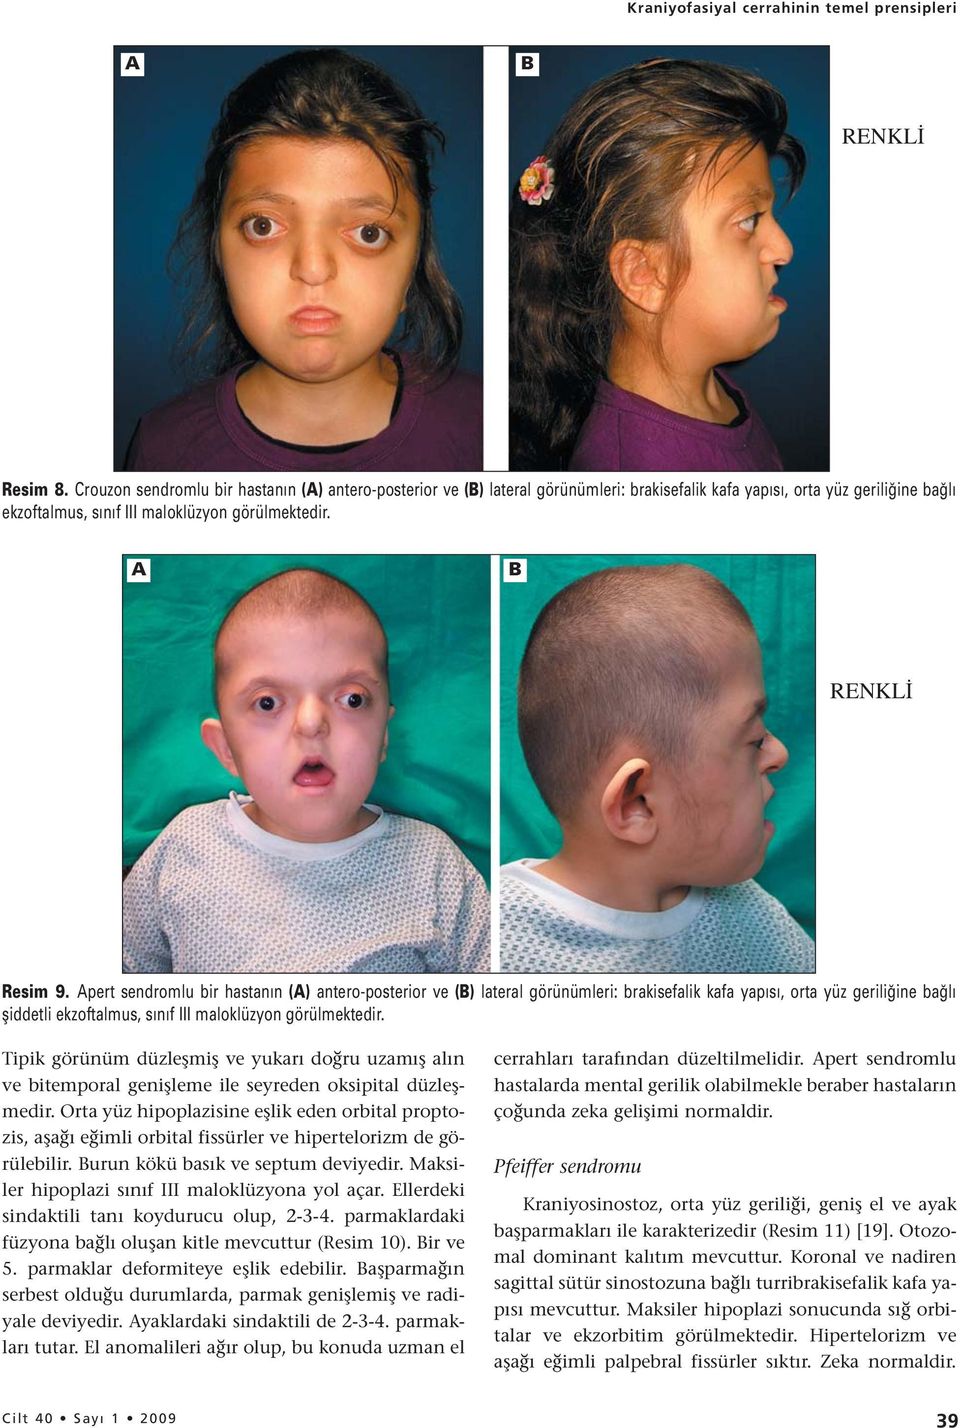 pert sendromlu bir hastanın () antero-posterior ve () lateral görünümleri: brakisefalik kafa yapısı, orta yüz geriliğine bağlı şiddetli ekzoftalmus, sınıf III maloklüzyon görülmektedir.